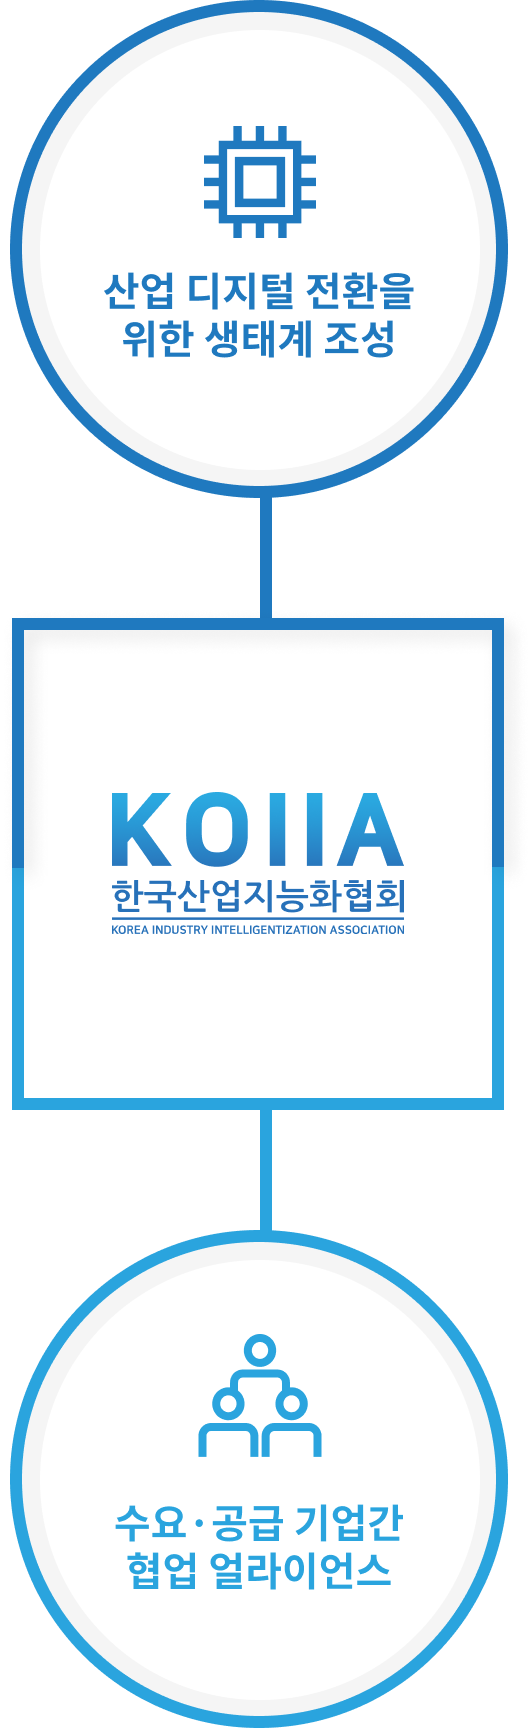 한국산업지능화협회 - 산업 디지털 전환을 위한 생태계 조성, 수요·공급 기업간 협업 얼라이언스